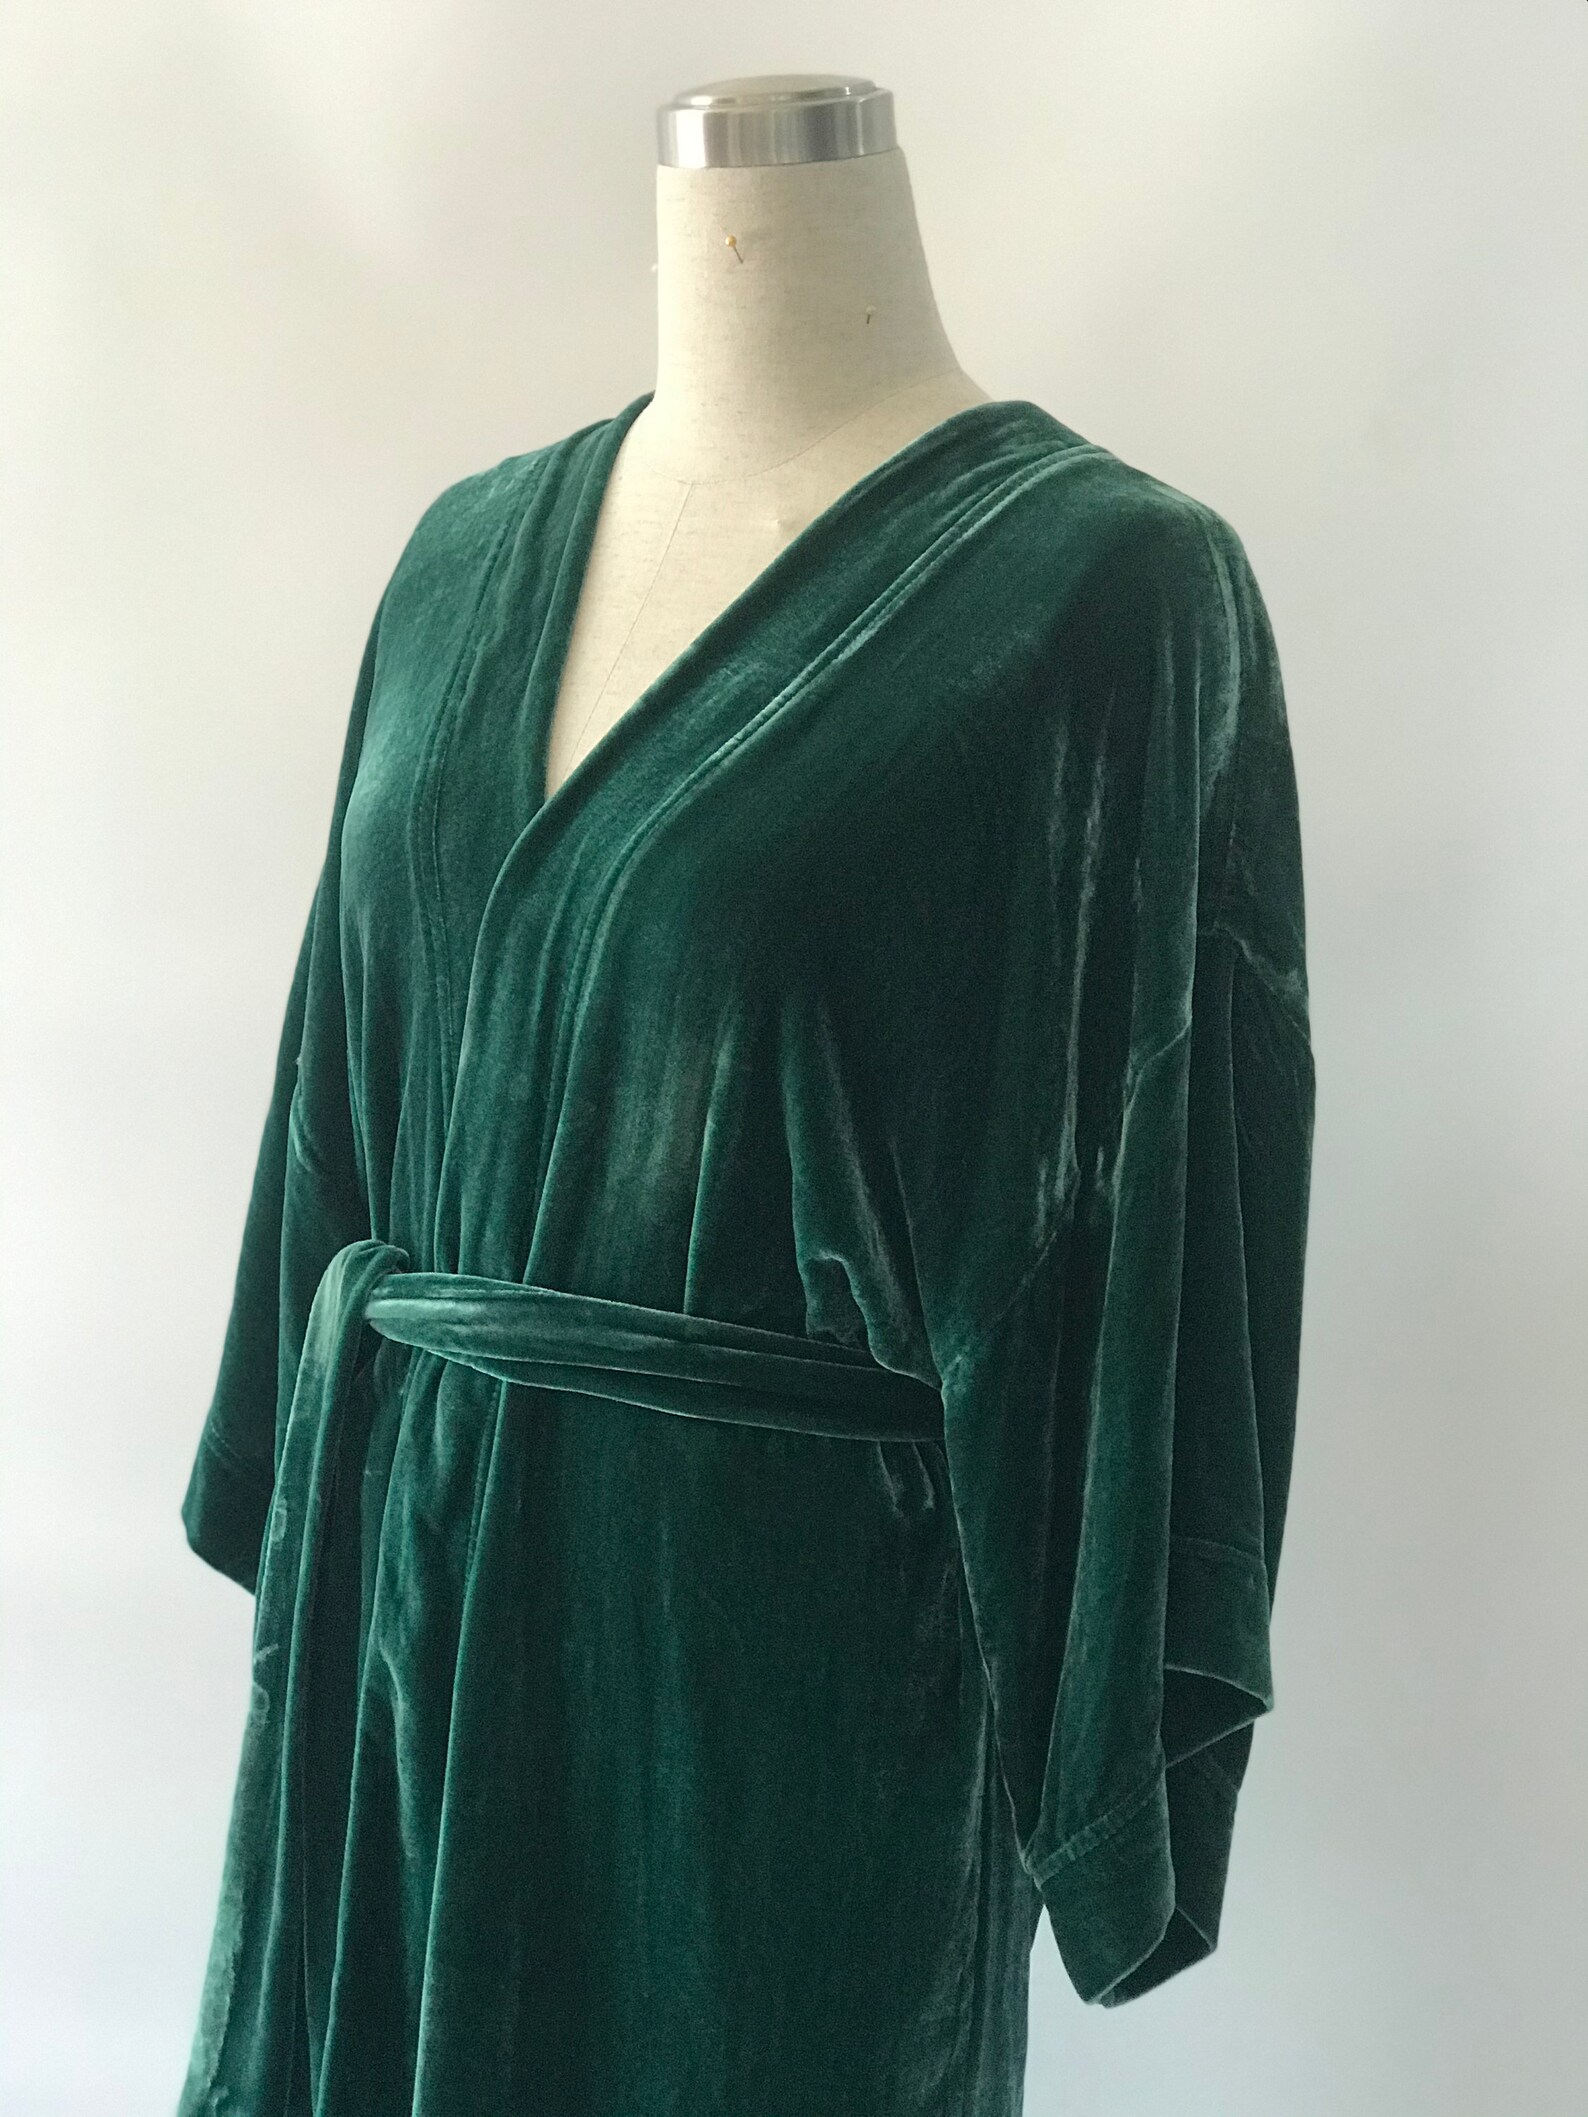 Silk velvet bathrobe robe vintage valentines day gift for | Etsy